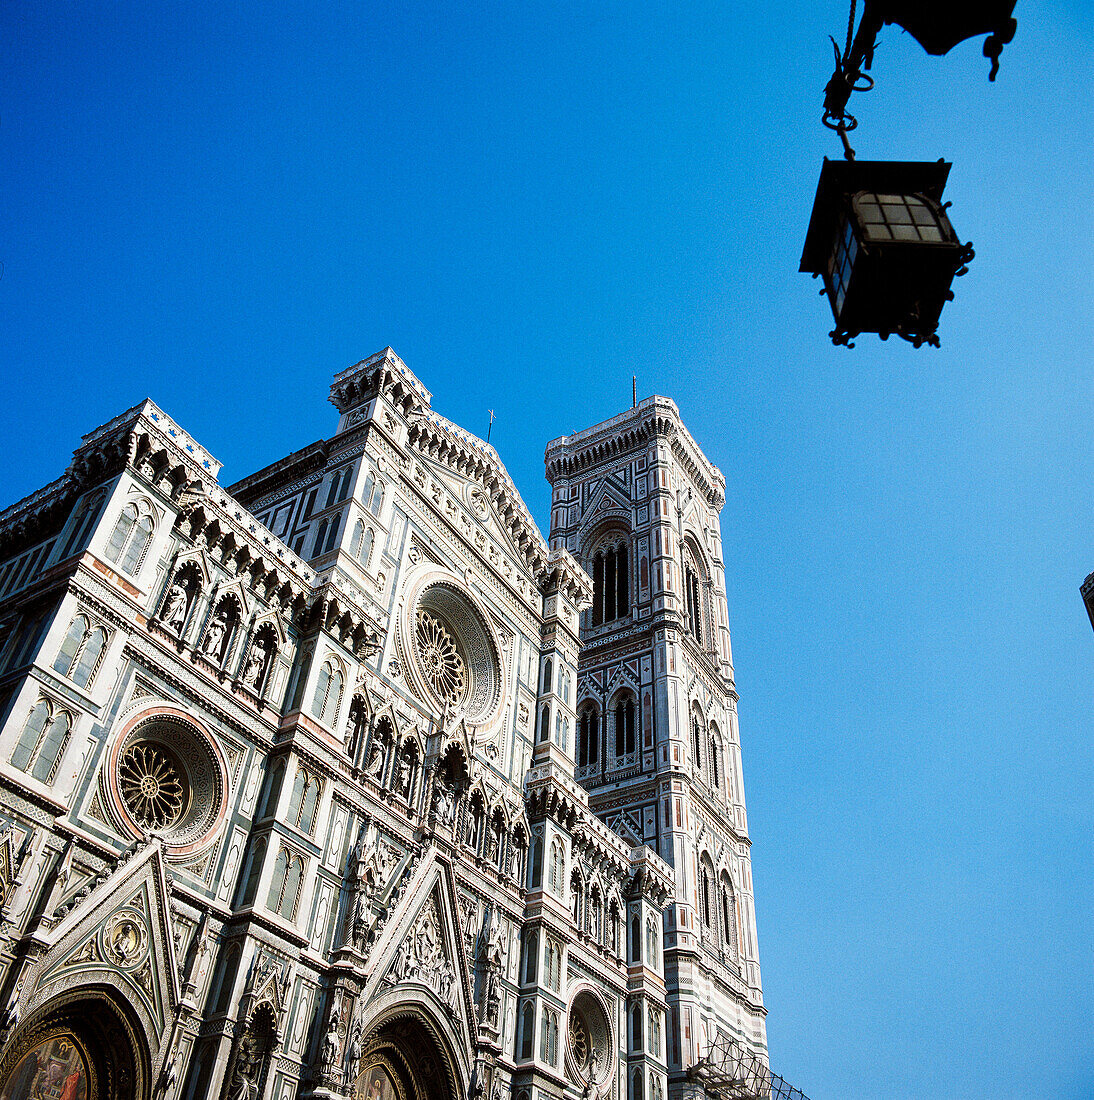 Santa Maria del Fiore (1426-1436), Florence. Tuscany, Italy